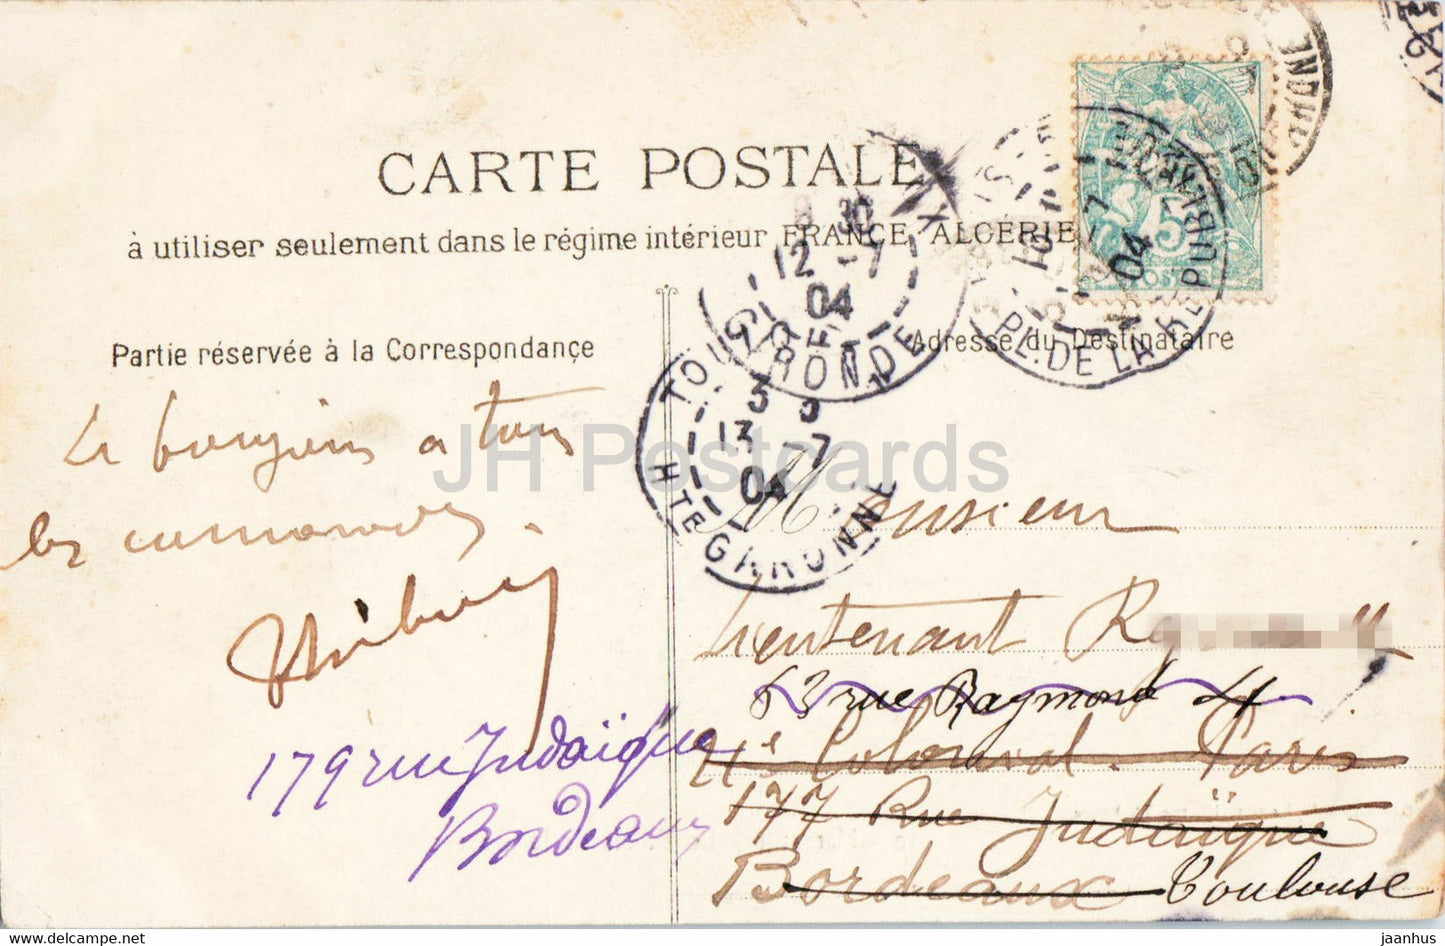 Marseille - Le Palais de La Bourse - 10 - tramway - carte postale ancienne - 1904 - France - occasion